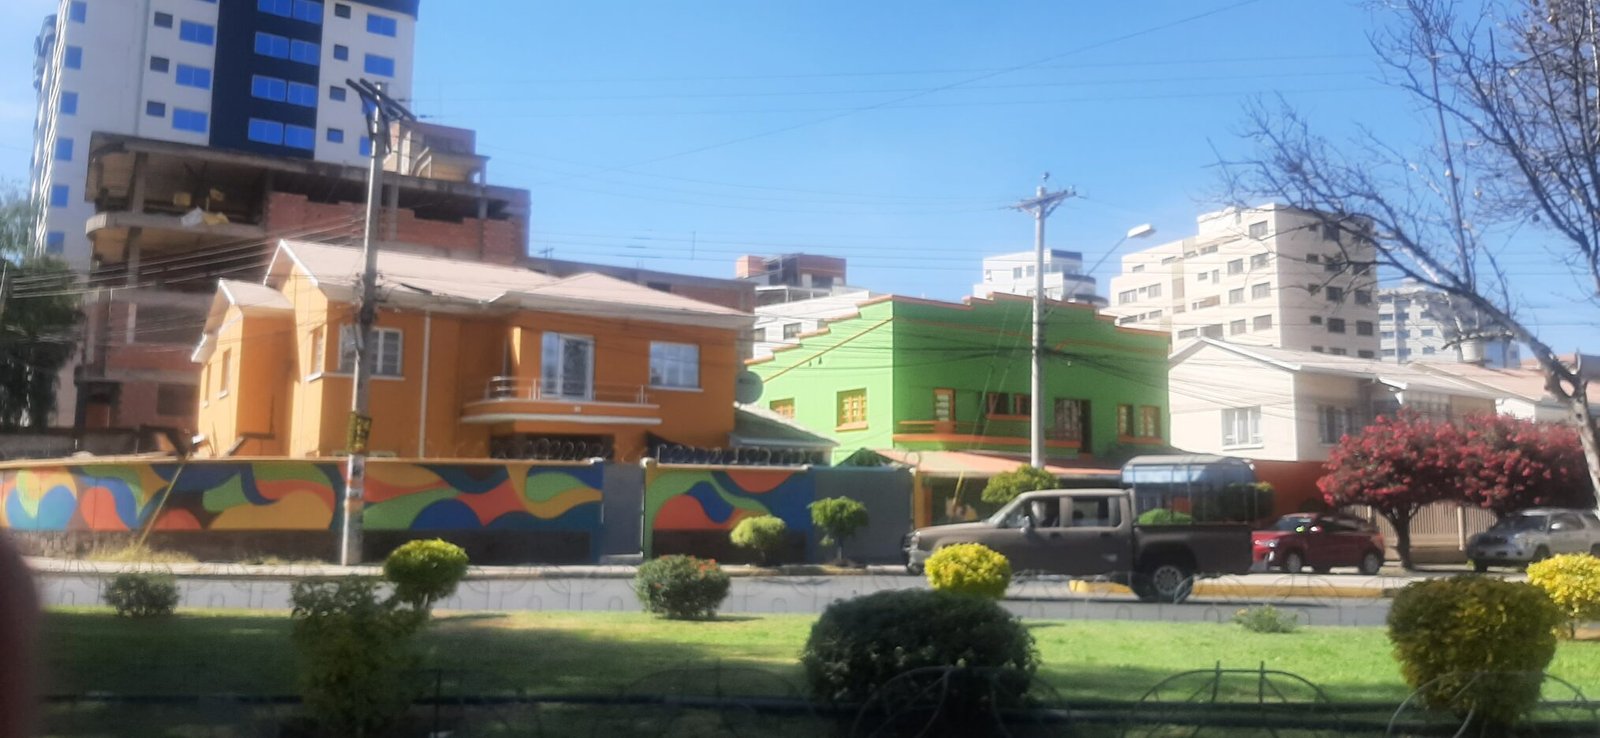 Casas y departamentos de personas de clase alta, en la ciudad de Cochabamba, Bolivia